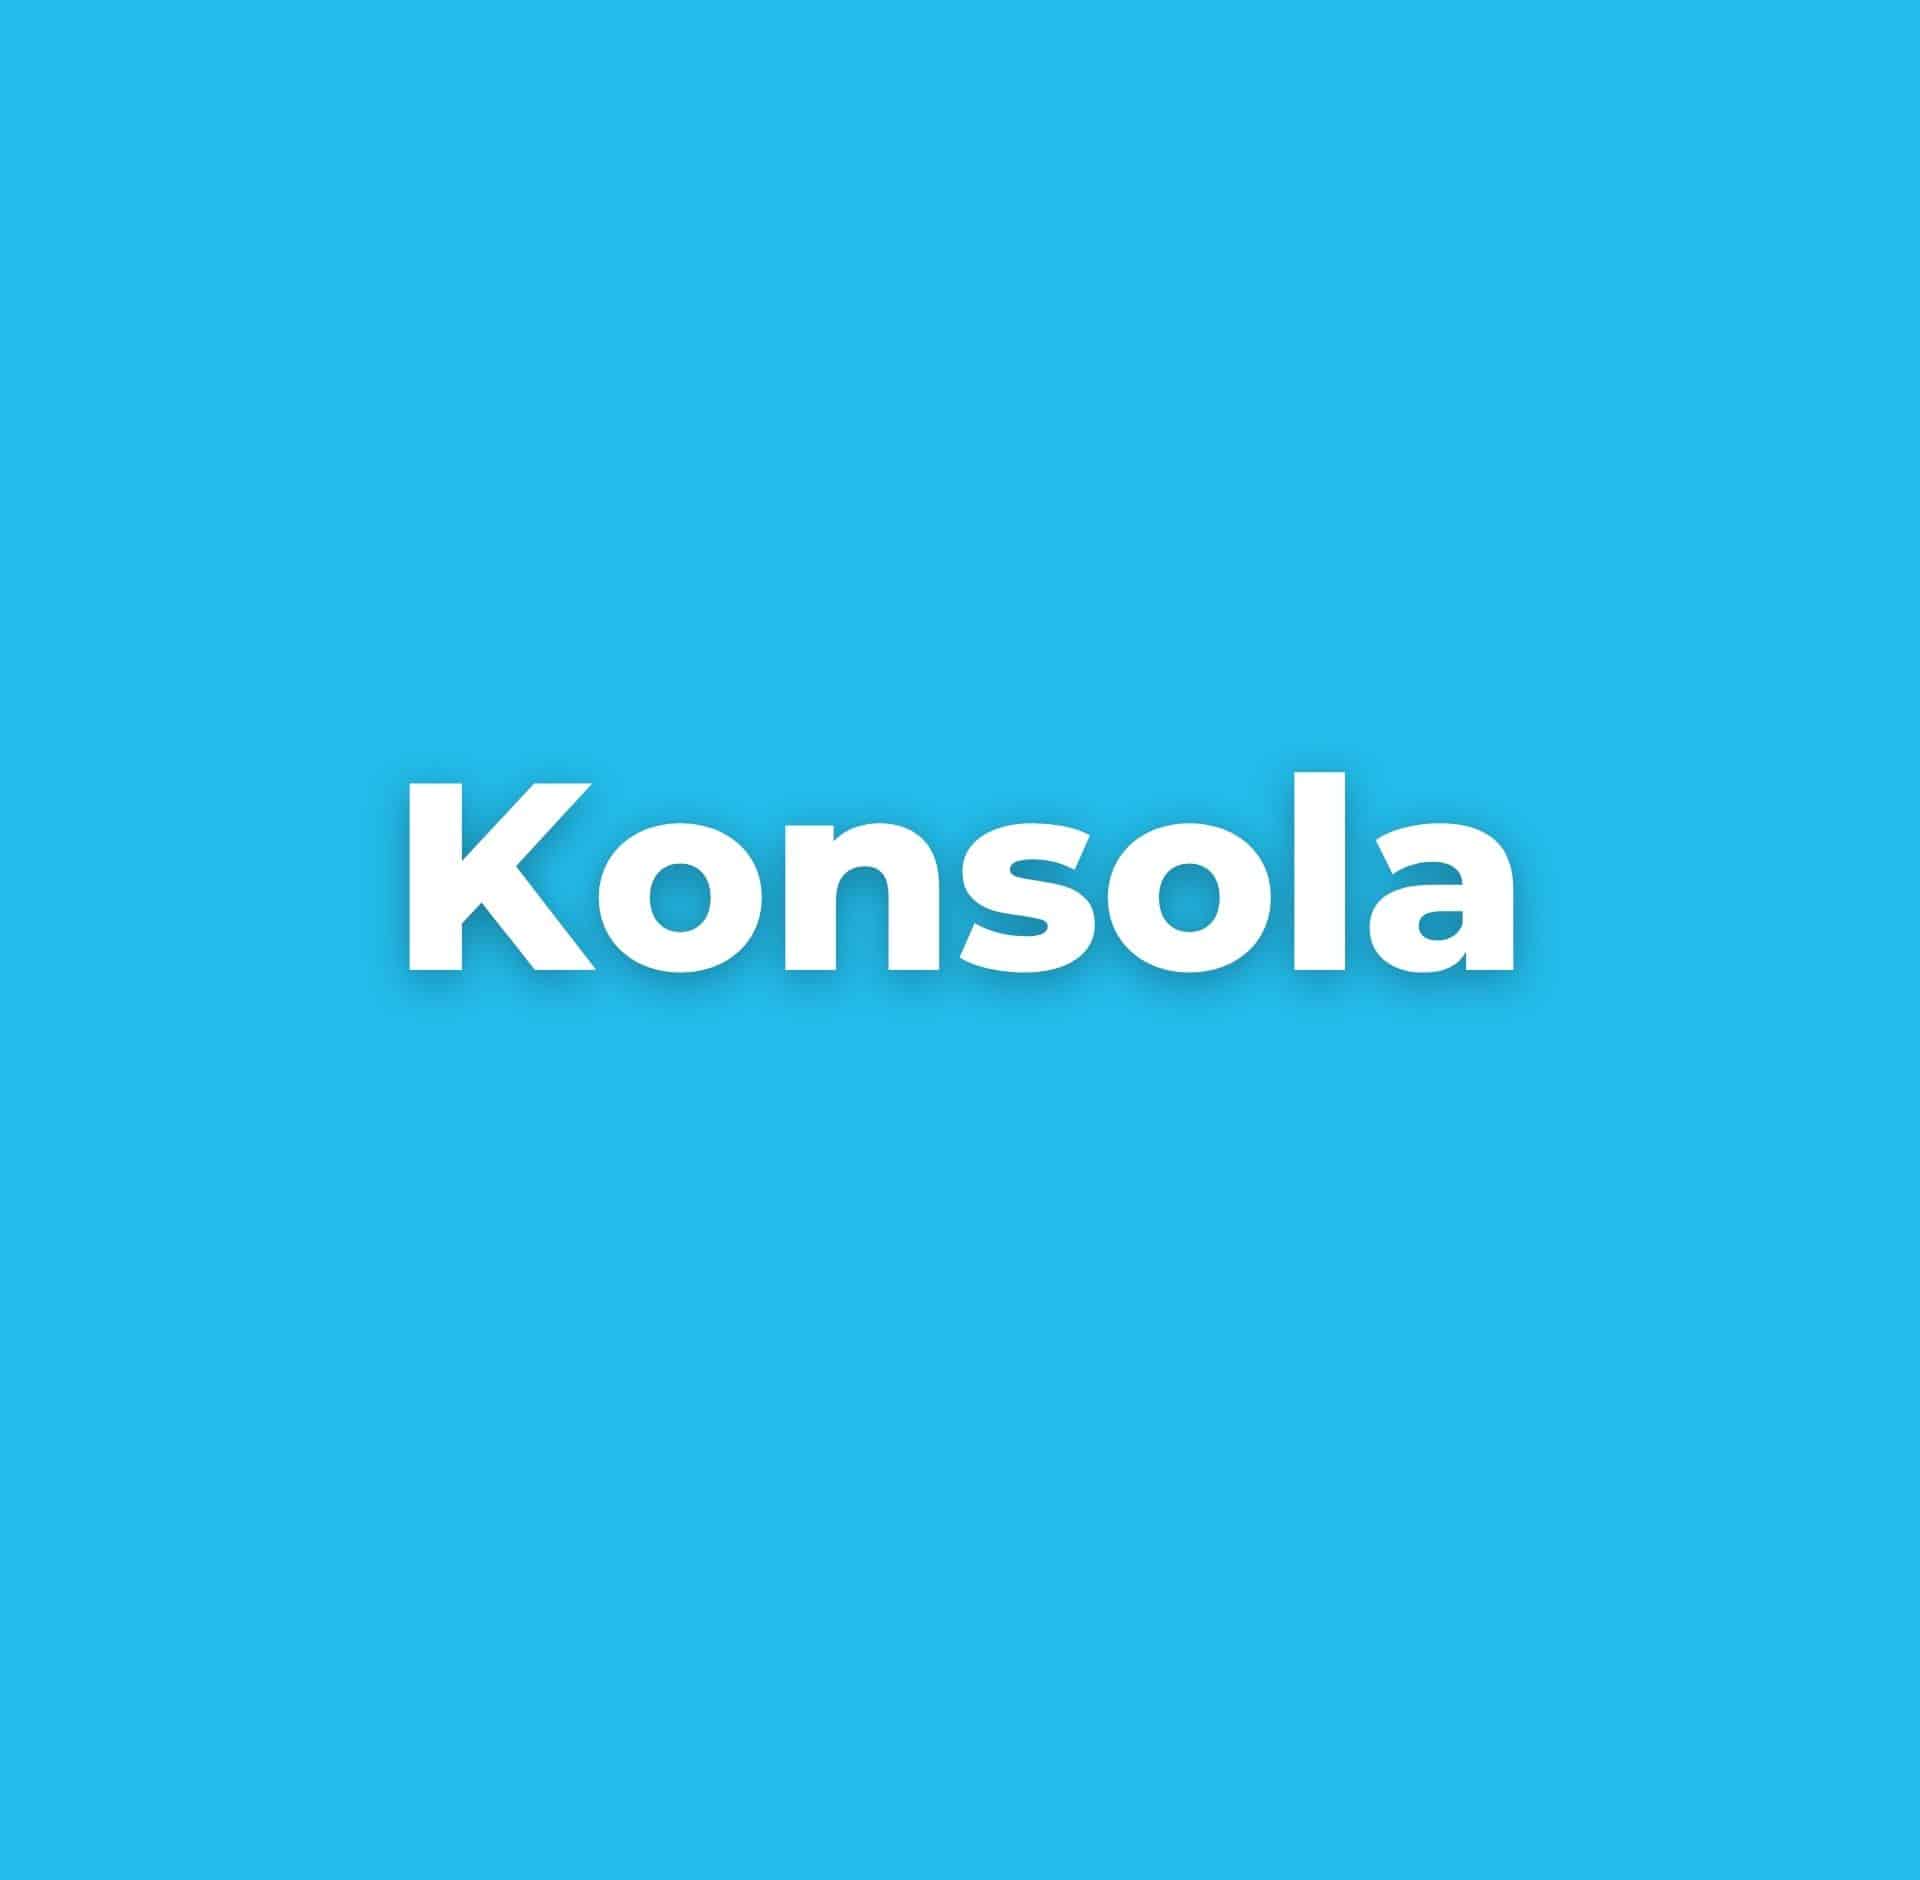 Konsola